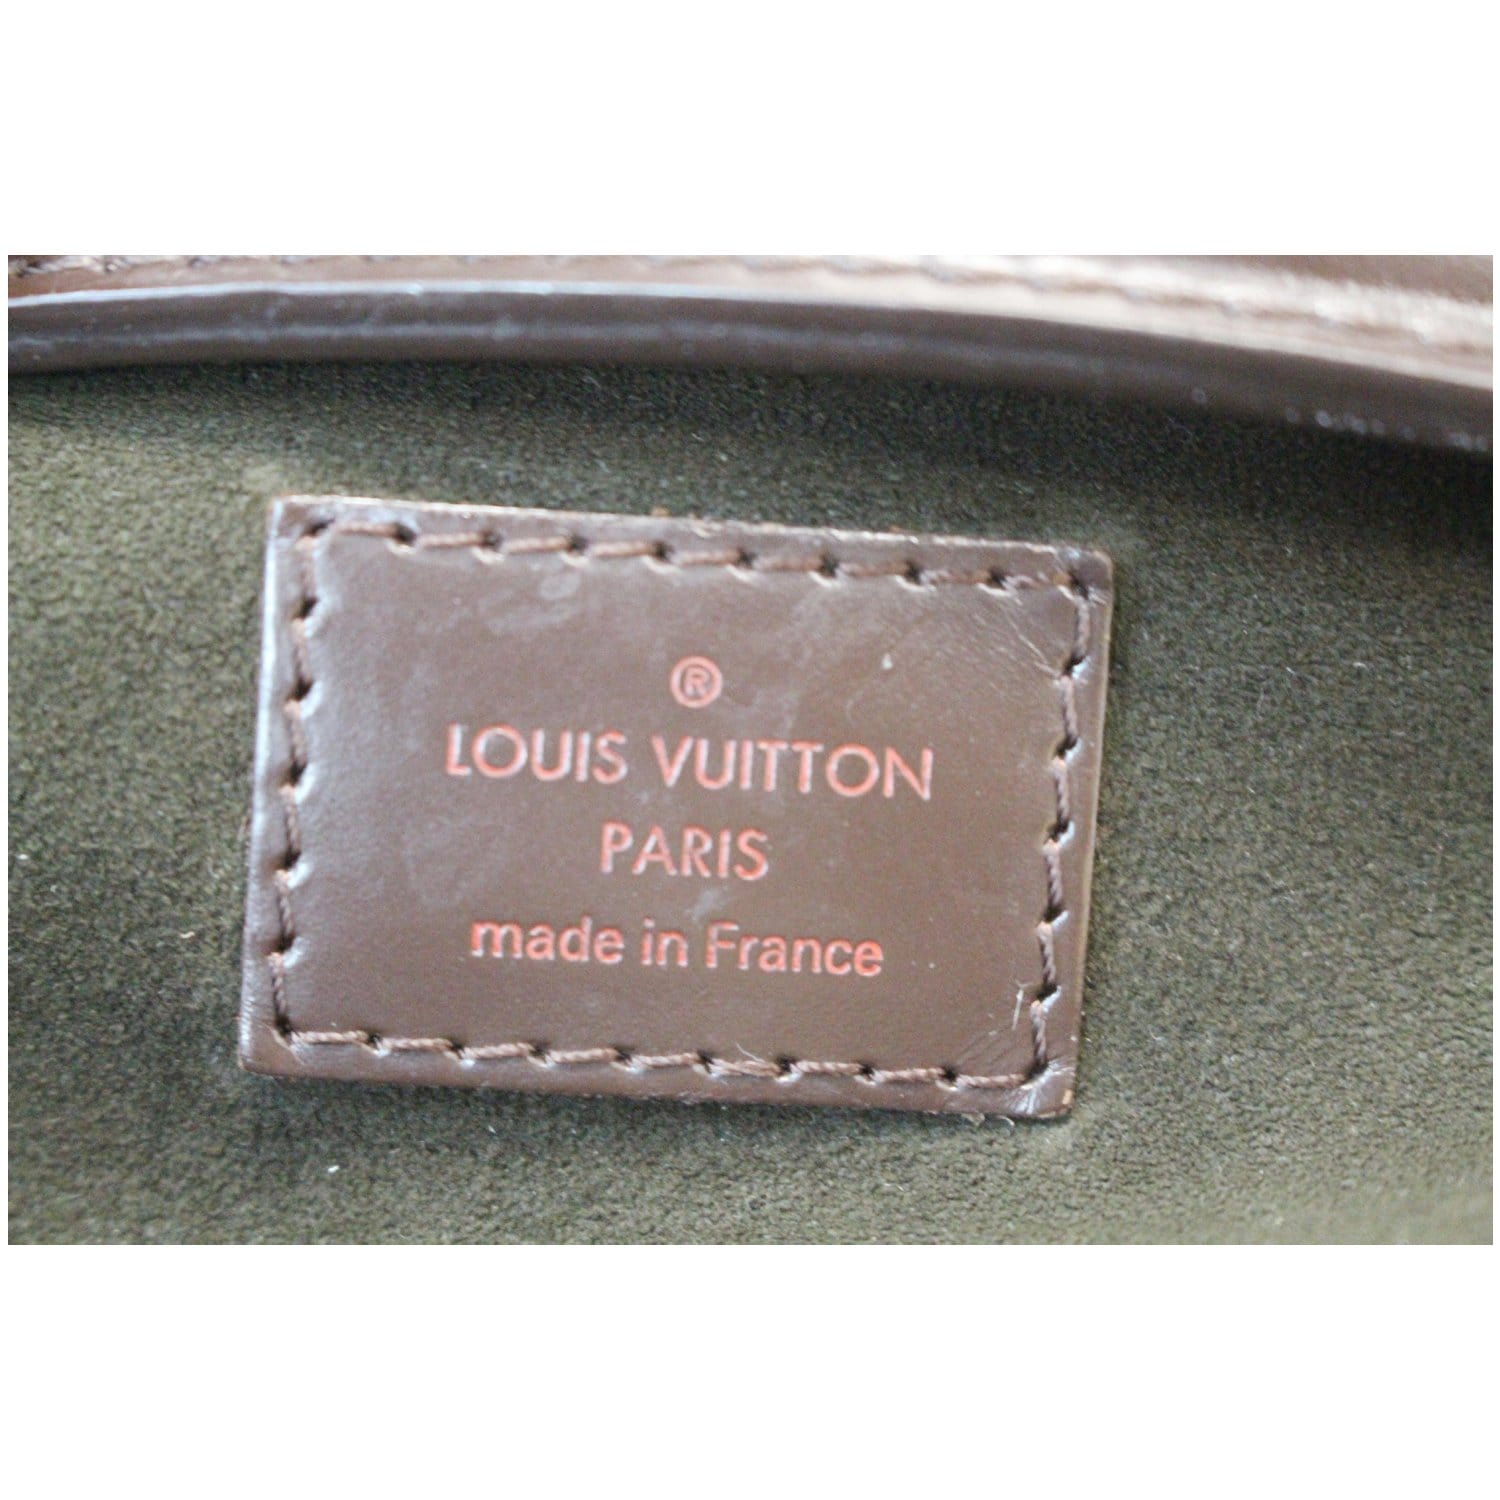 ewa lagan - Louis Vuitton Bag Shopper Hobo Tasche Damier Portobello GM